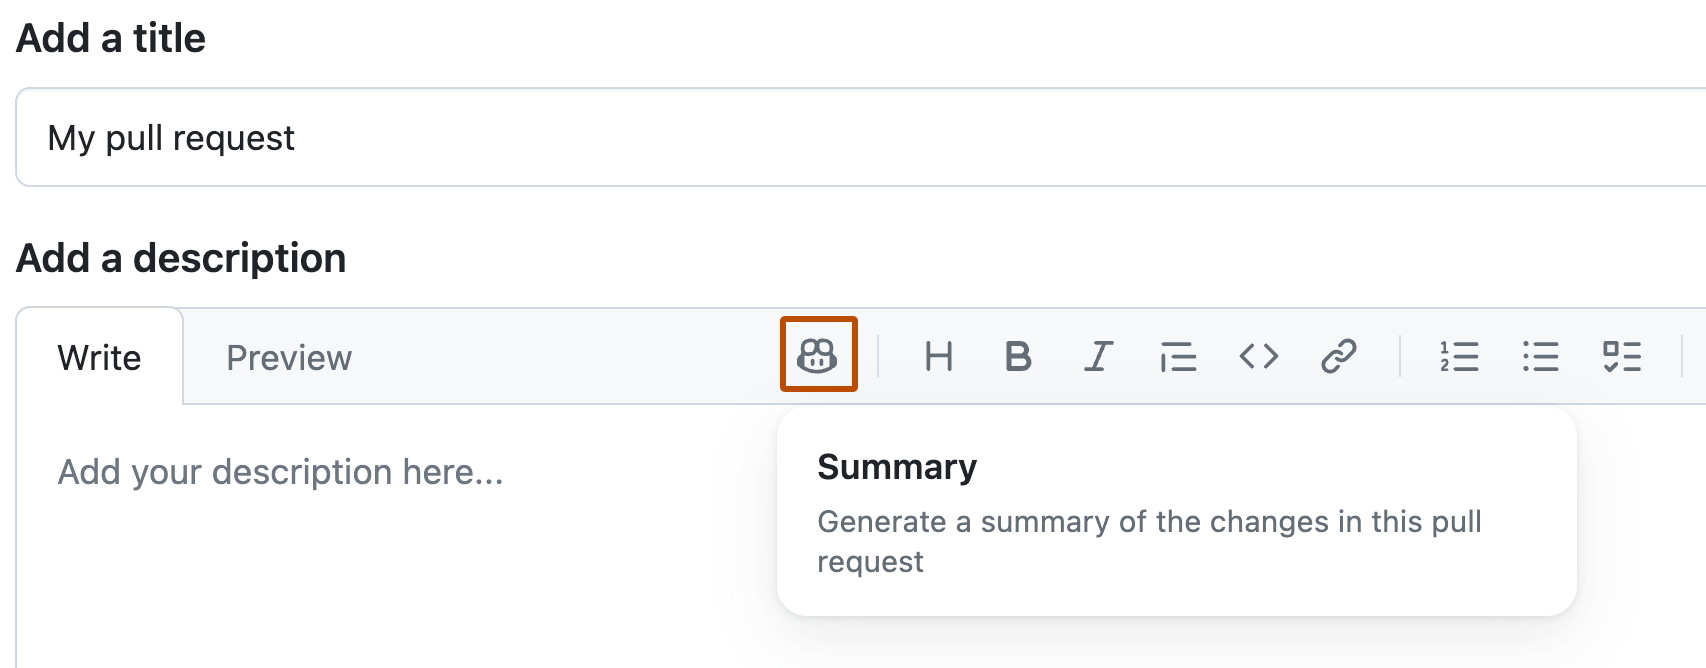 Captura de pantalla del formulario para crear una solicitud de incorporación de cambios. Se resalta un icono de Copilot y aparece un cuadro con el comando "Resumen".